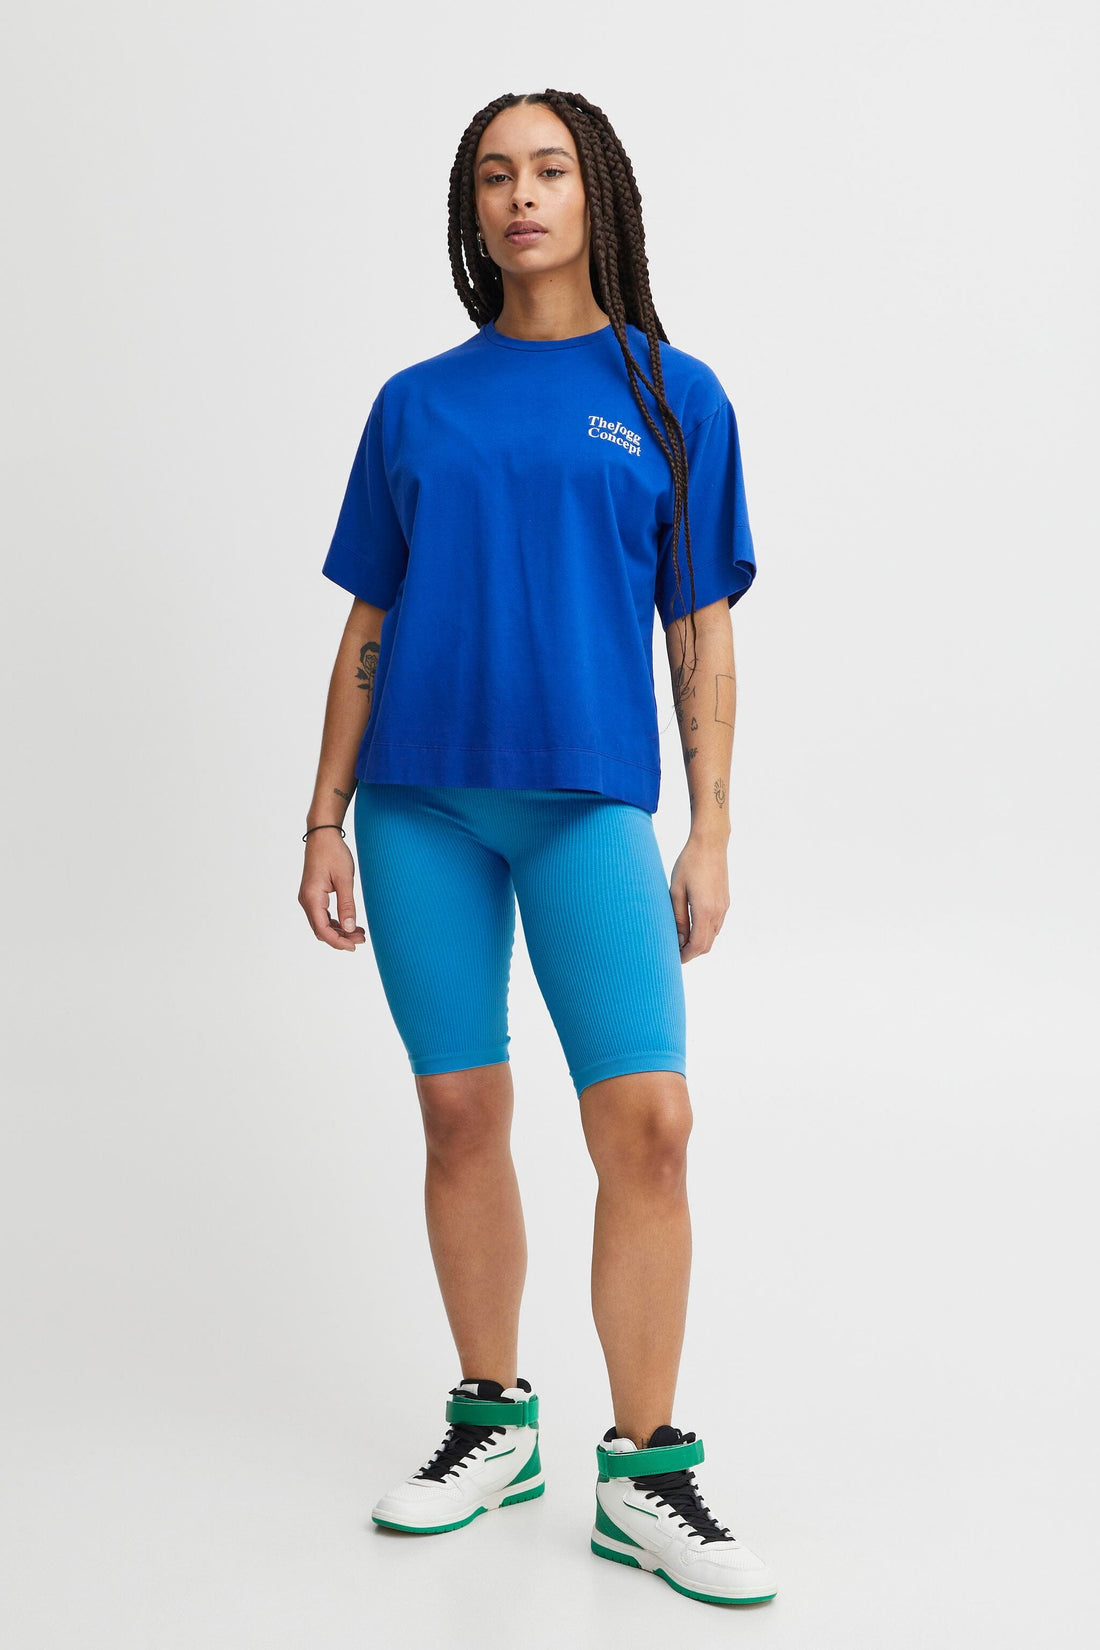 THE JOGG CONCEPT • Biker Sahana Leggings Malibu Blue S/M 